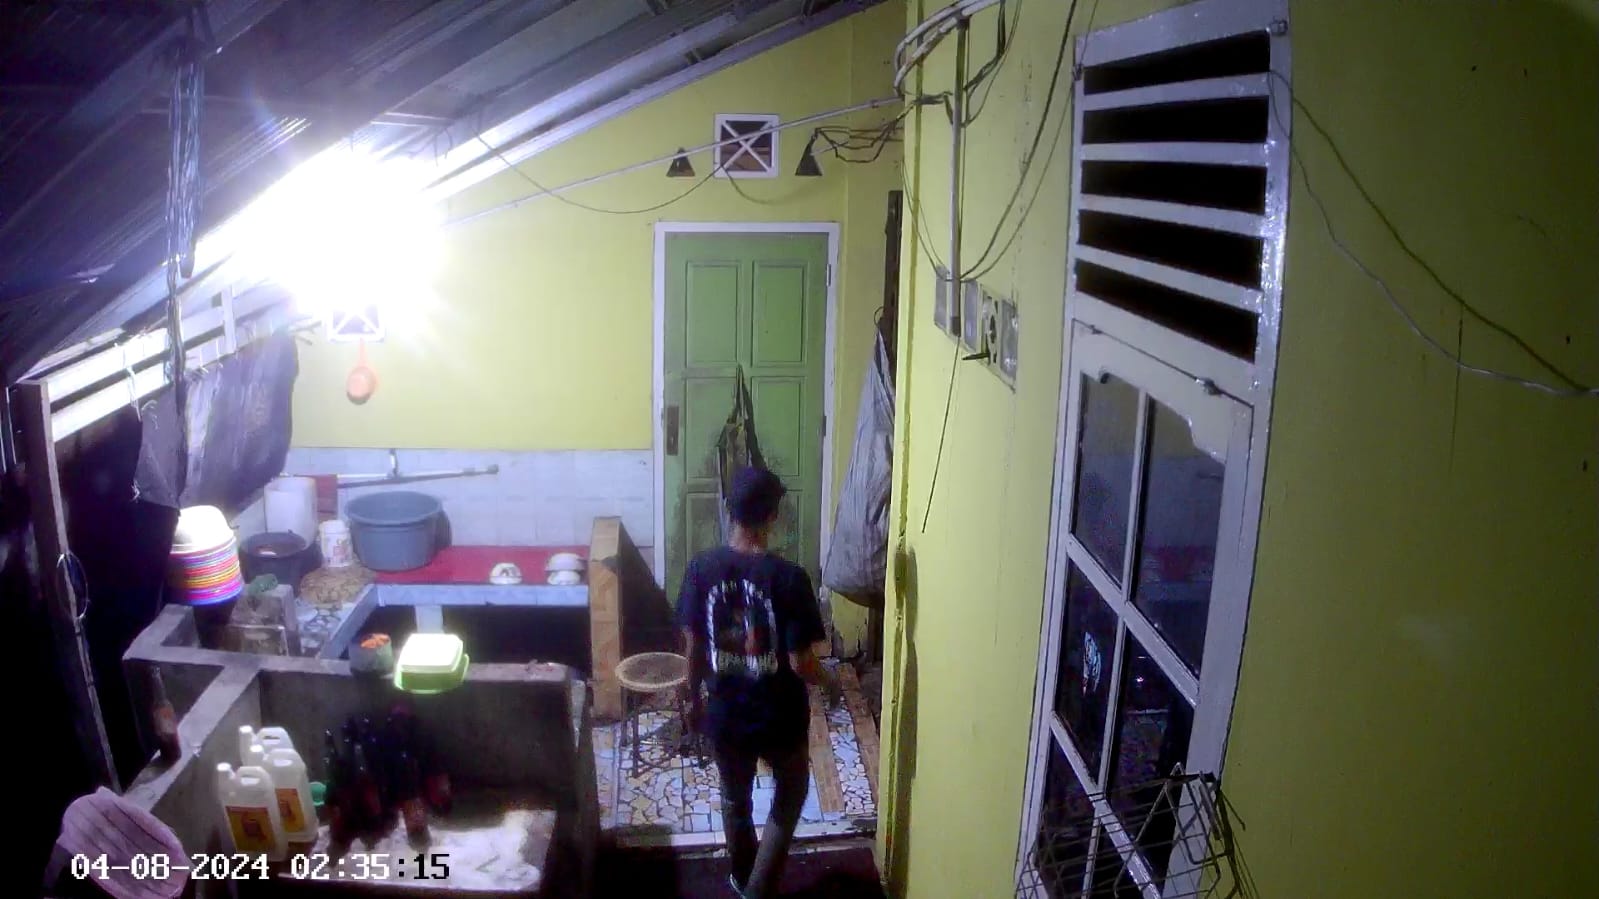 Aksi Pencurian Uang di Dalam Kotak Amal, Terekam Kamera CCTV